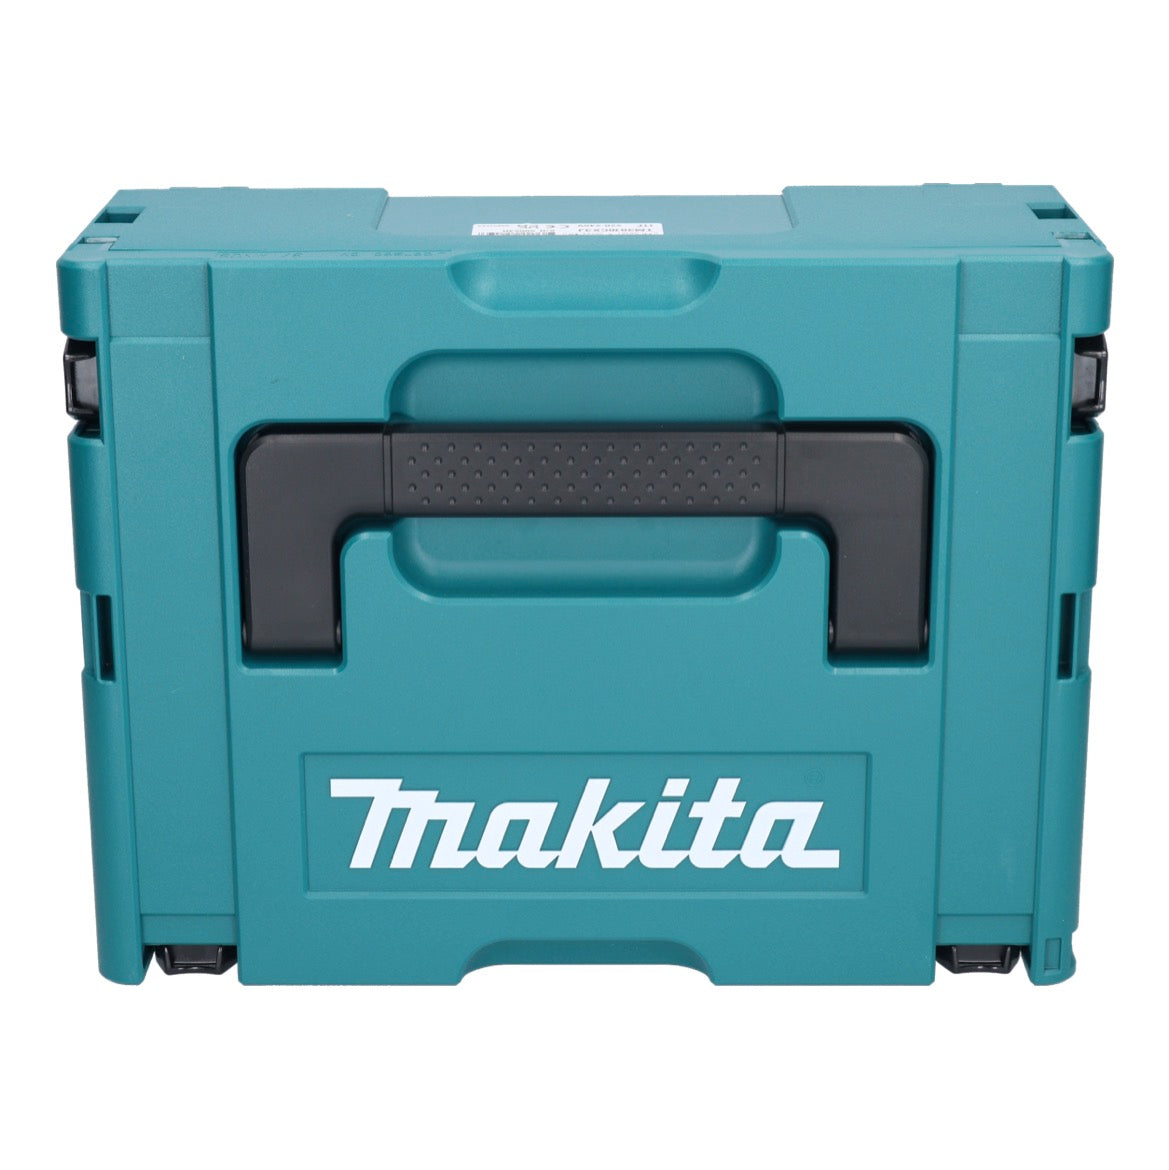 Makita TM 3010 CX3J Multifunktionswerkzeug 320 W OIS / Starlock + 59 tlg. Zubehör Set + Makpac